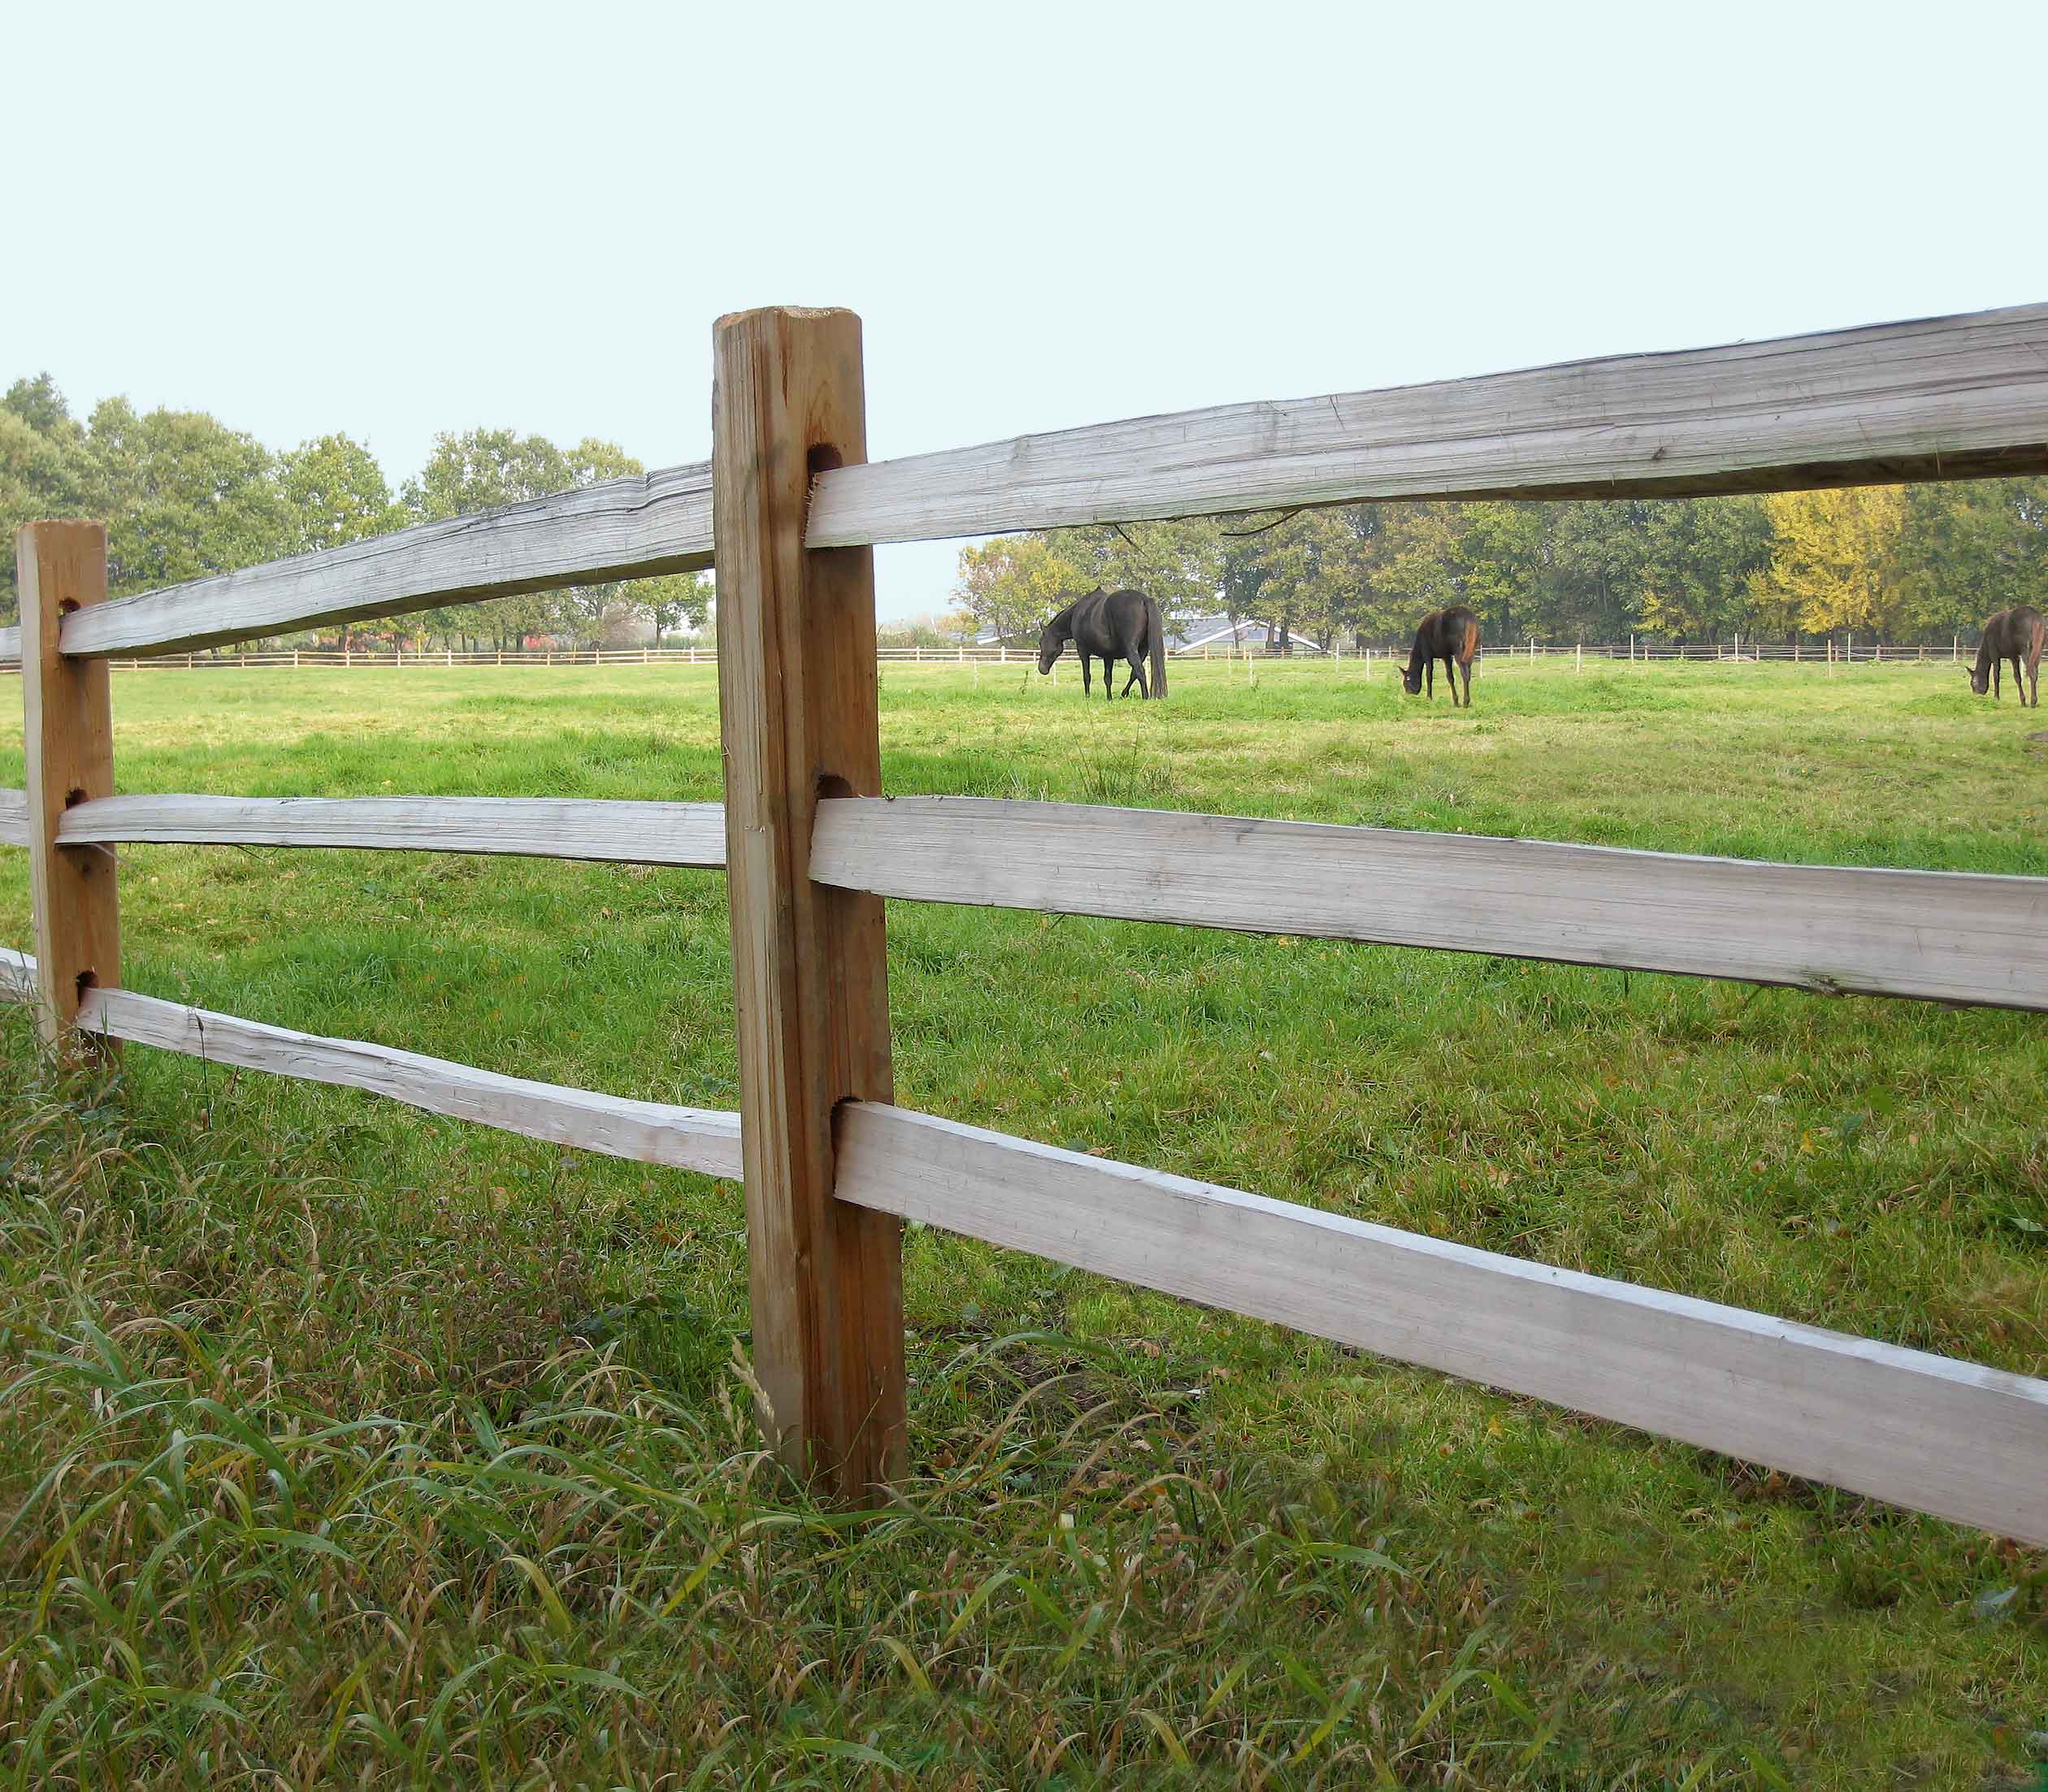 Mellem lægterne på et rustikt hestehegn kan tre heste ses græsse i en hestefold.